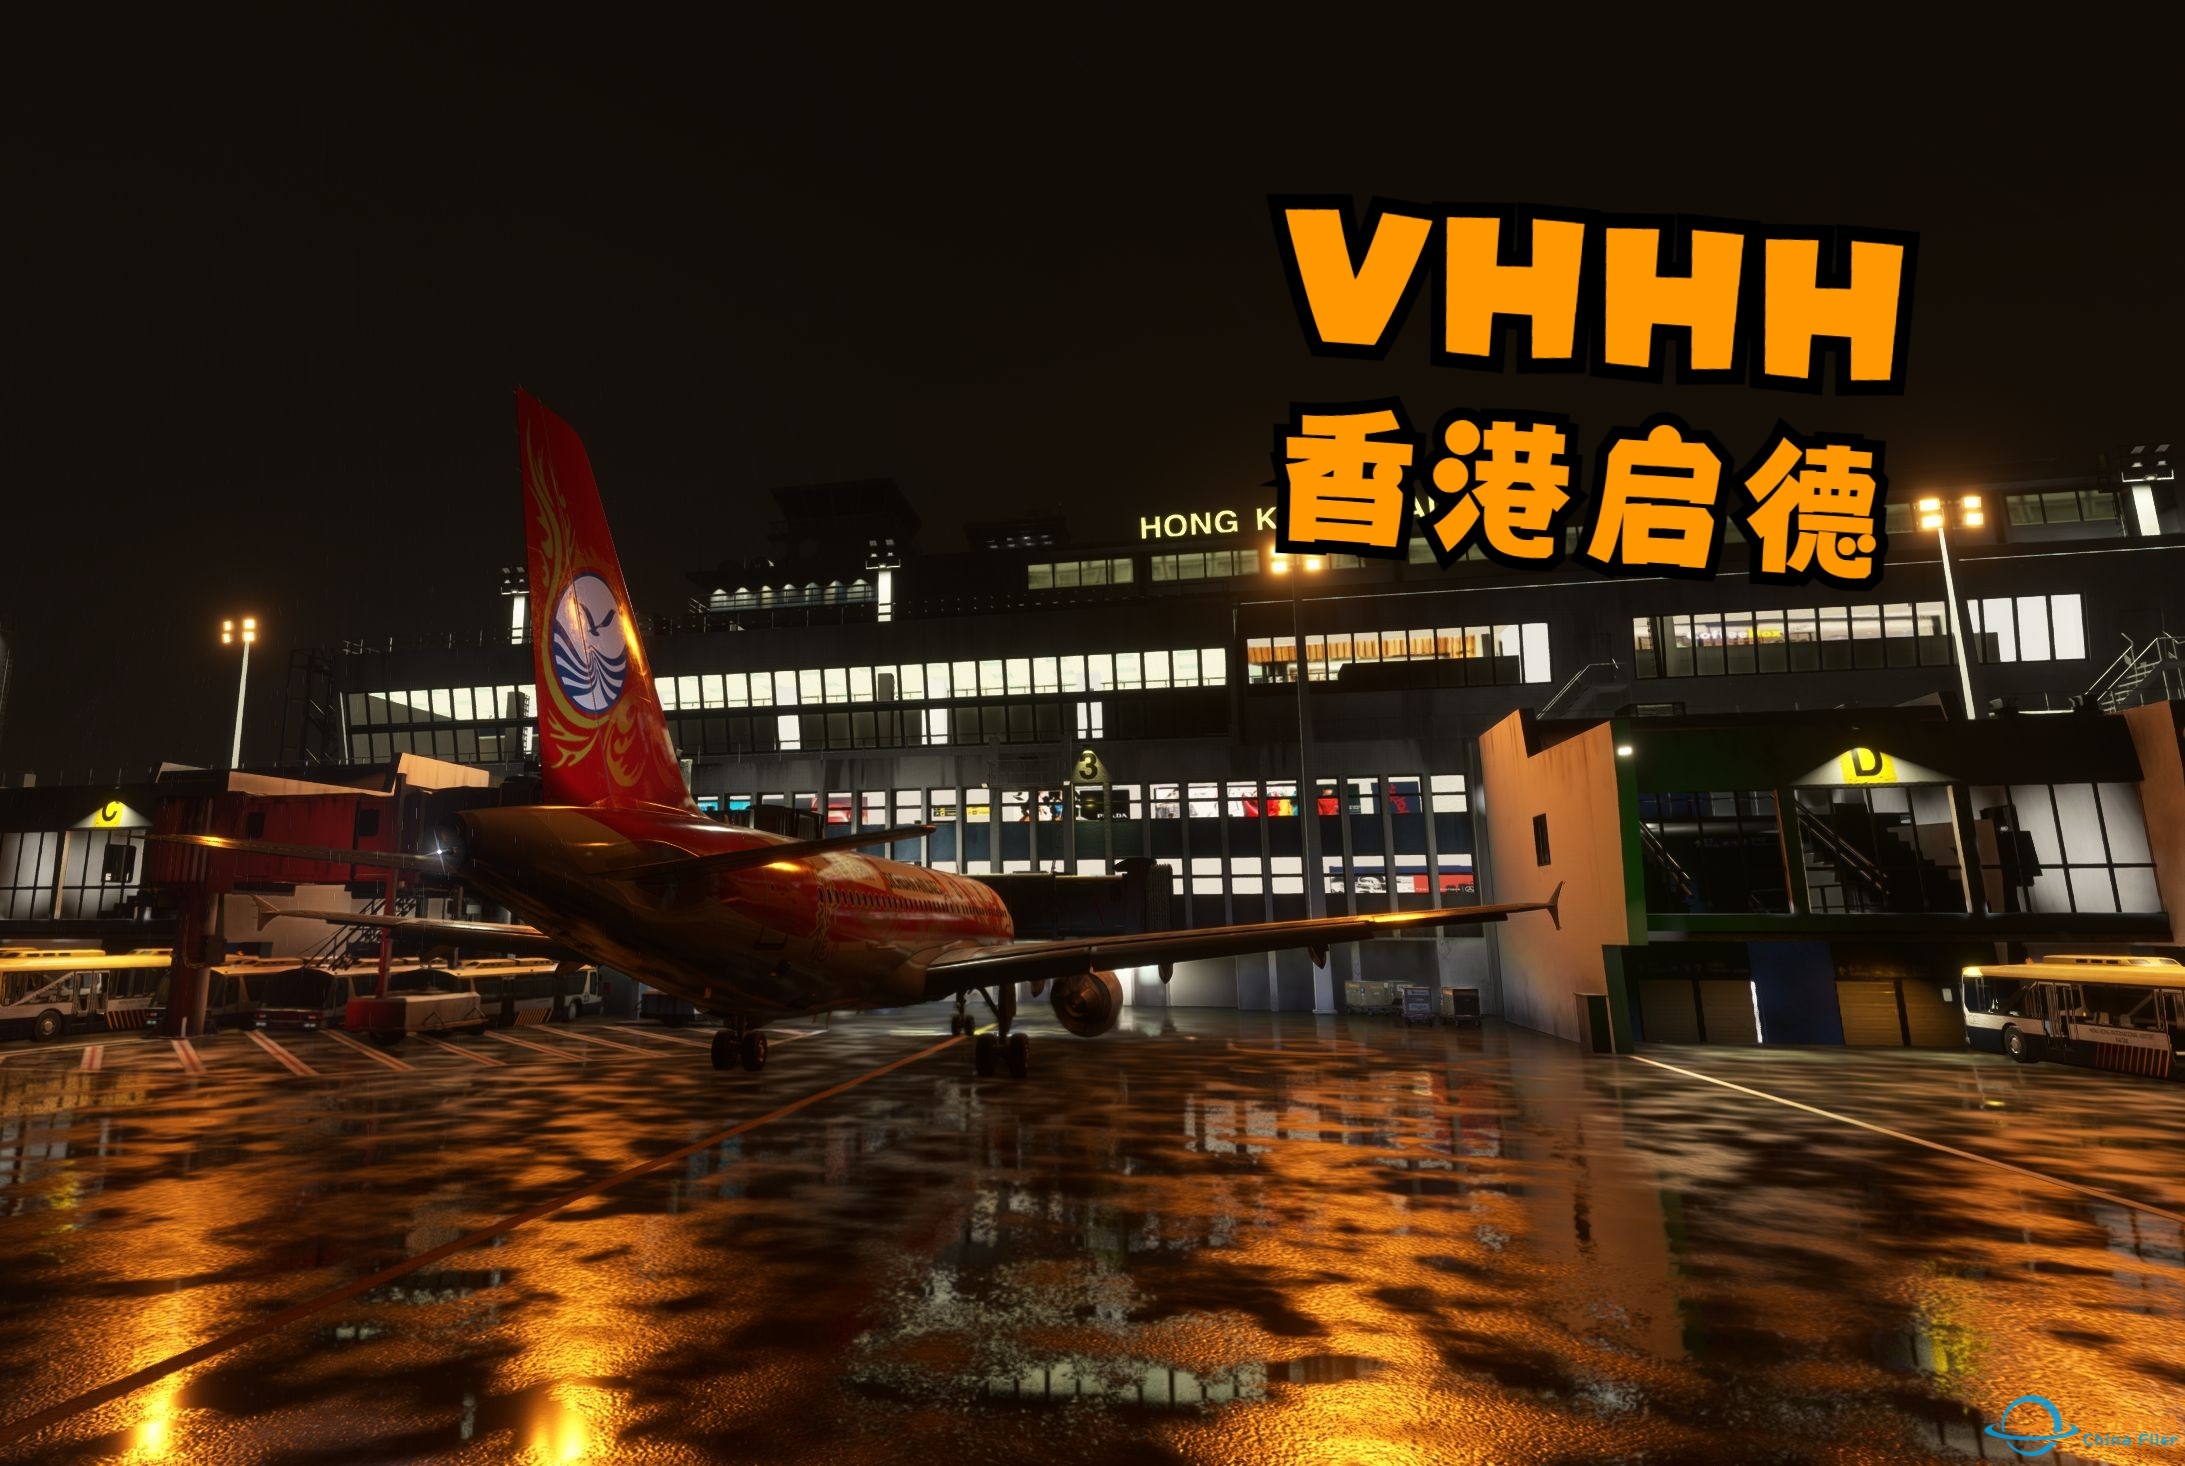 【模拟飞行 2020】香港启德 VHHH-1869 